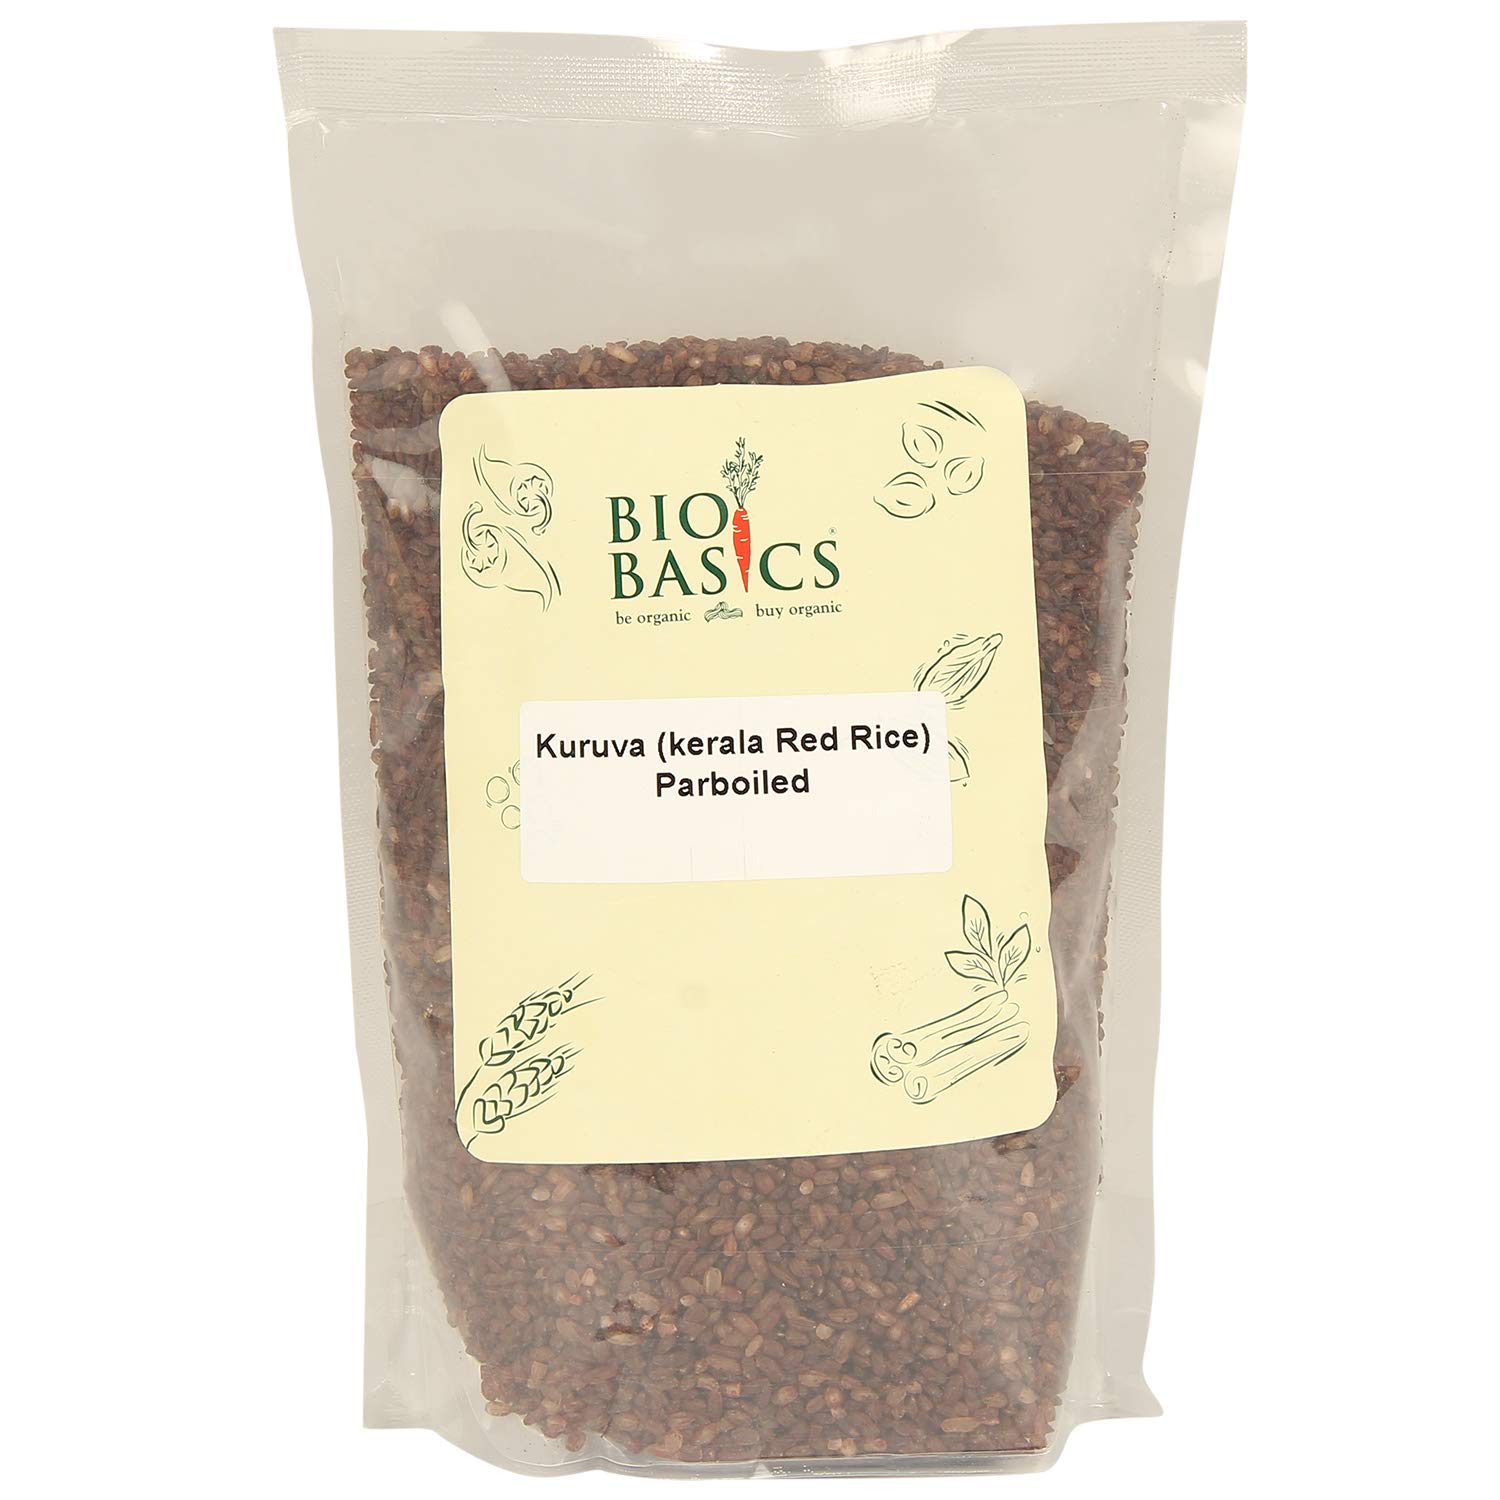 Product: Biobasics Kuruva Parboiled Rice,1000g